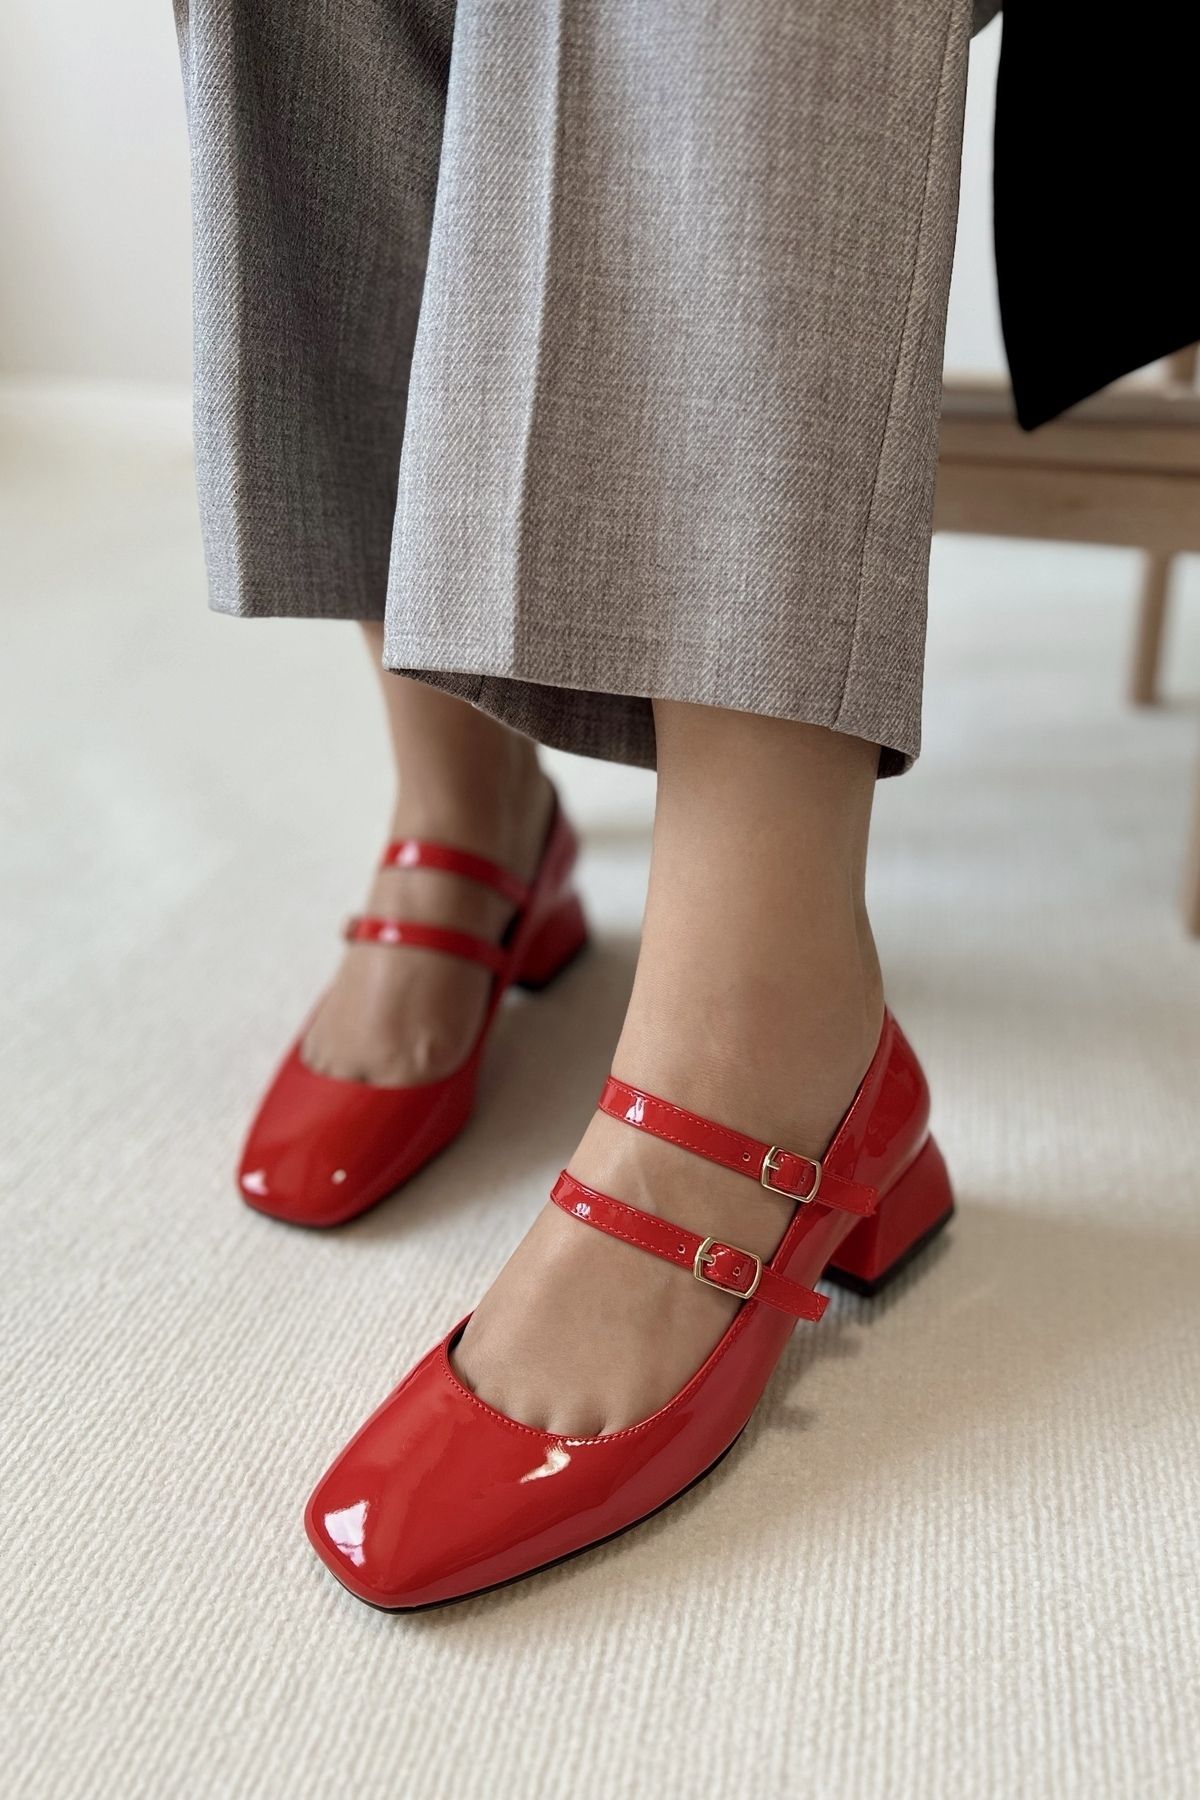 POLKA STORE Kadın Mary Jane Kırmızı Rugan Arkası Kapalı Çift Bant Kare Burun Baretli Kısa Blok Topuklu Ayakkabı